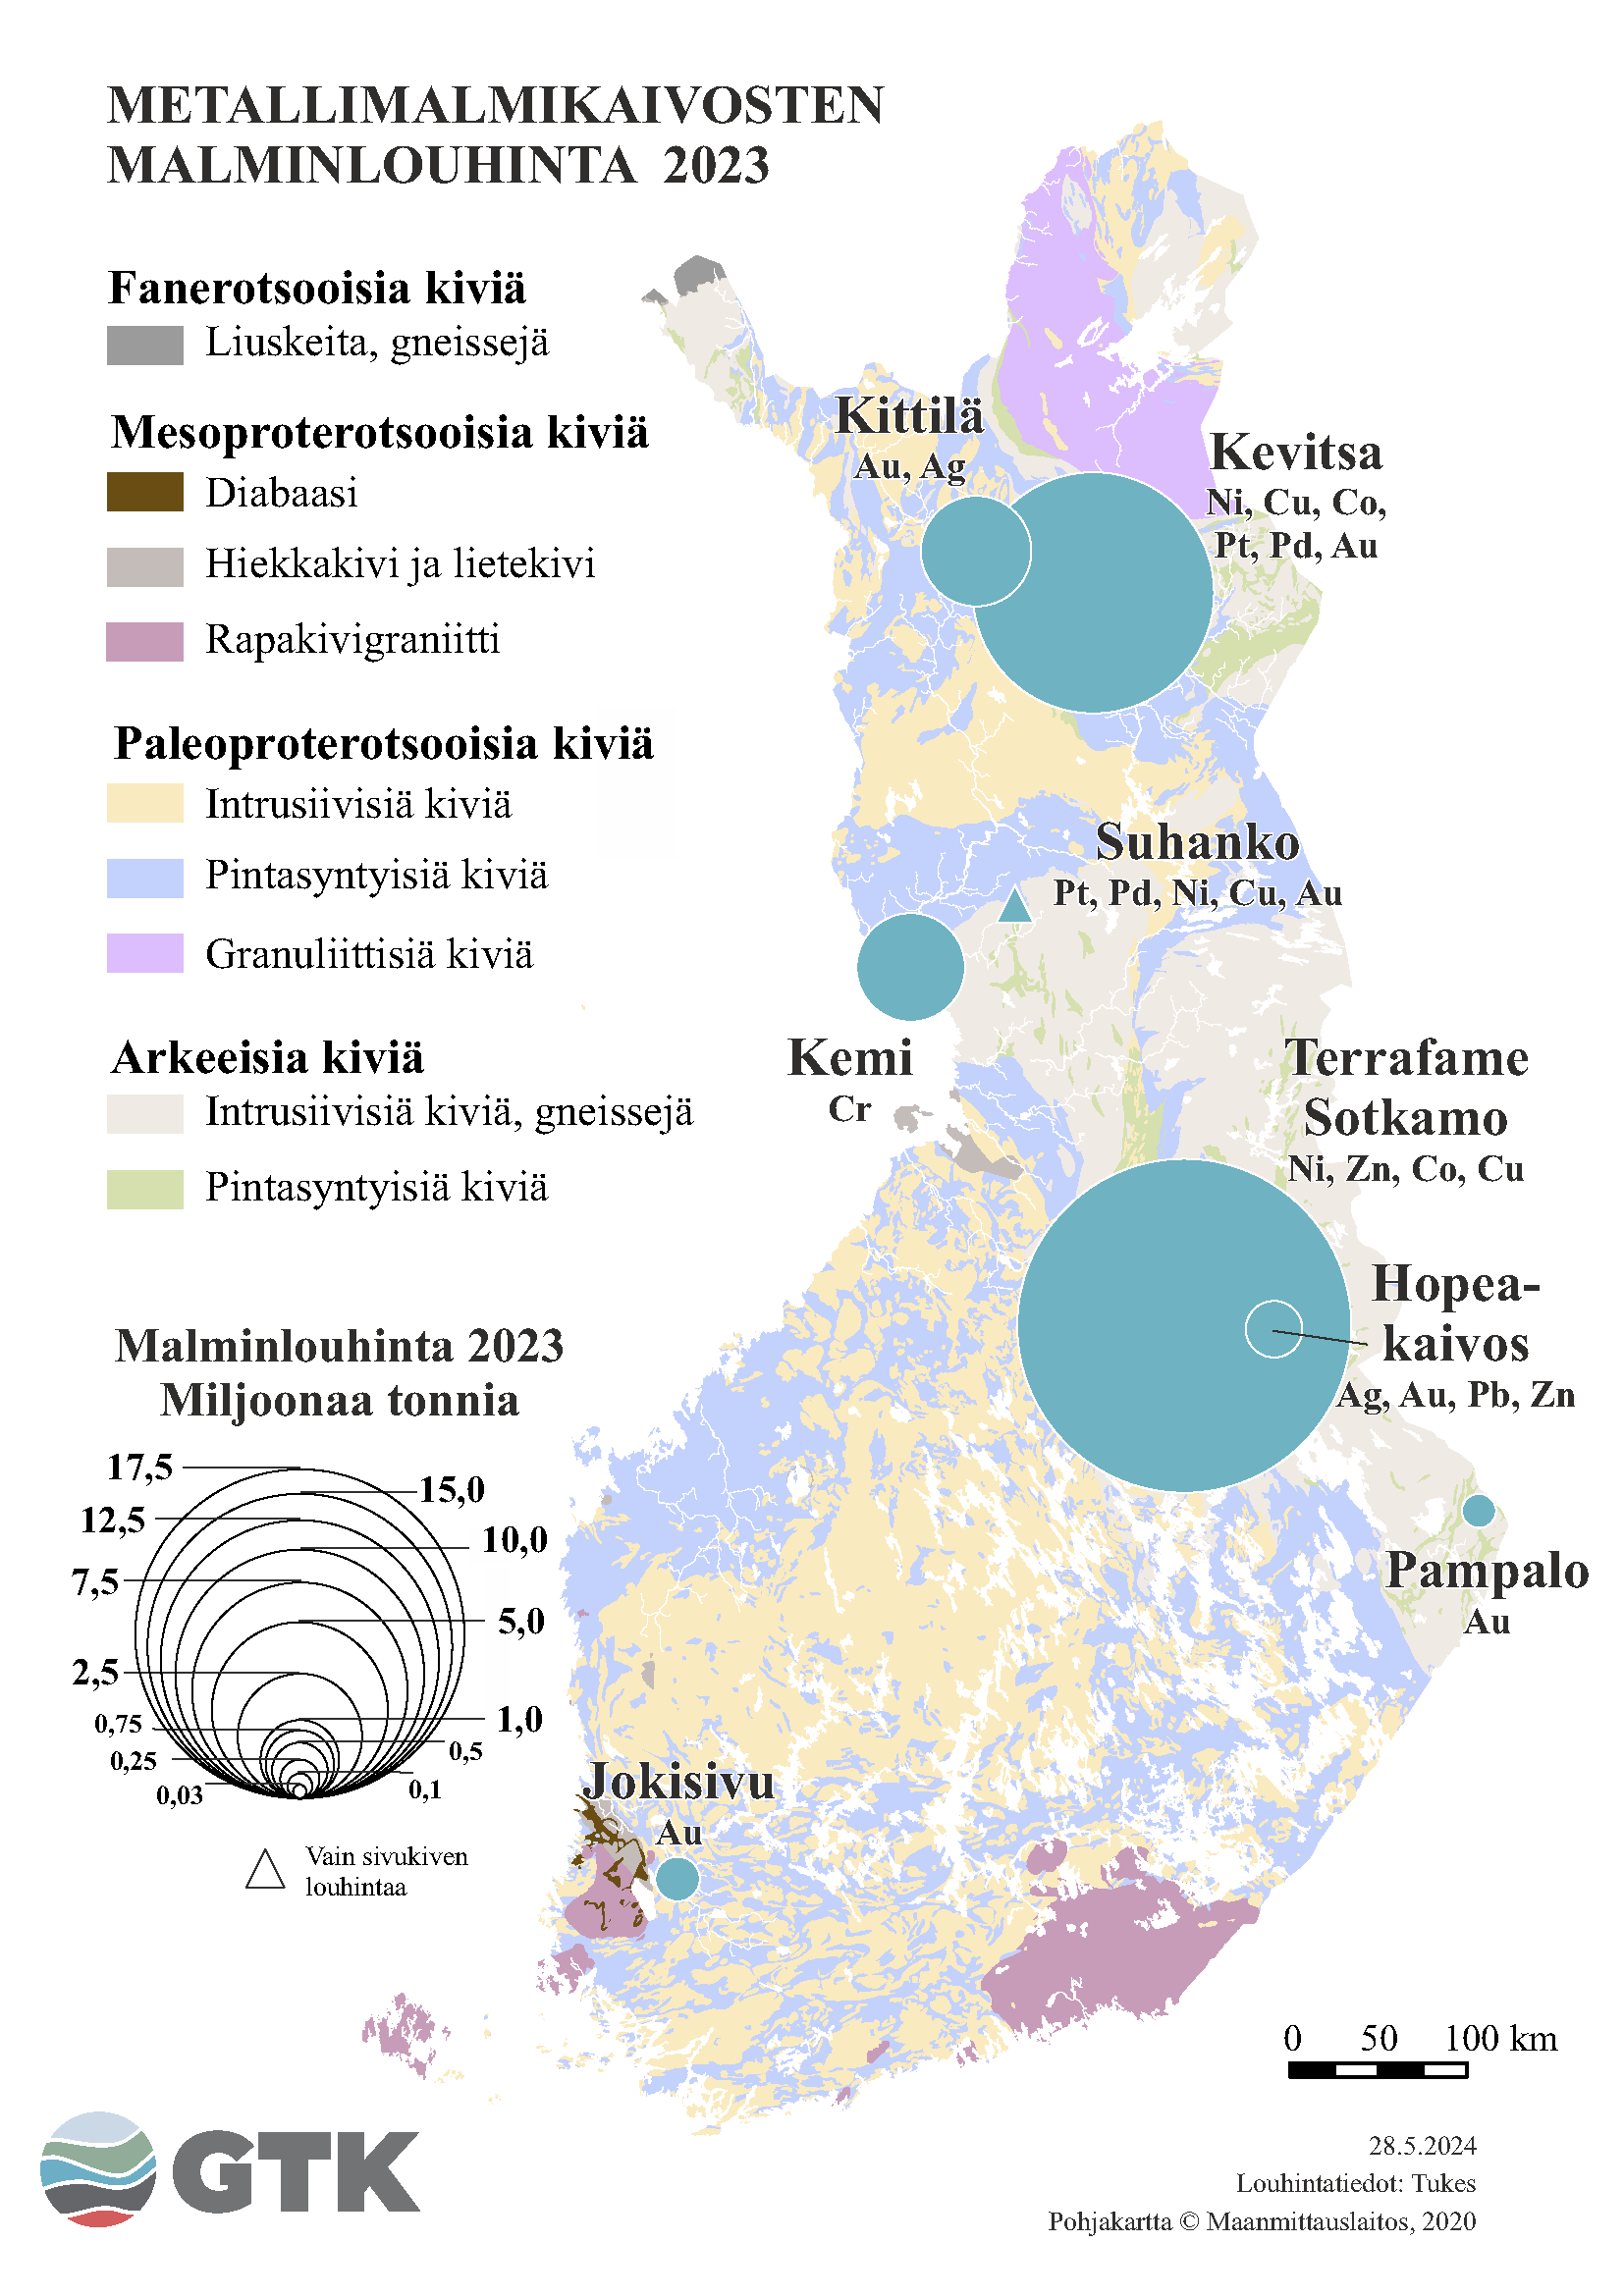 Suomen kartta, johon on merkattu metallimalmikaivosten malminlouhinta vuonna 2023